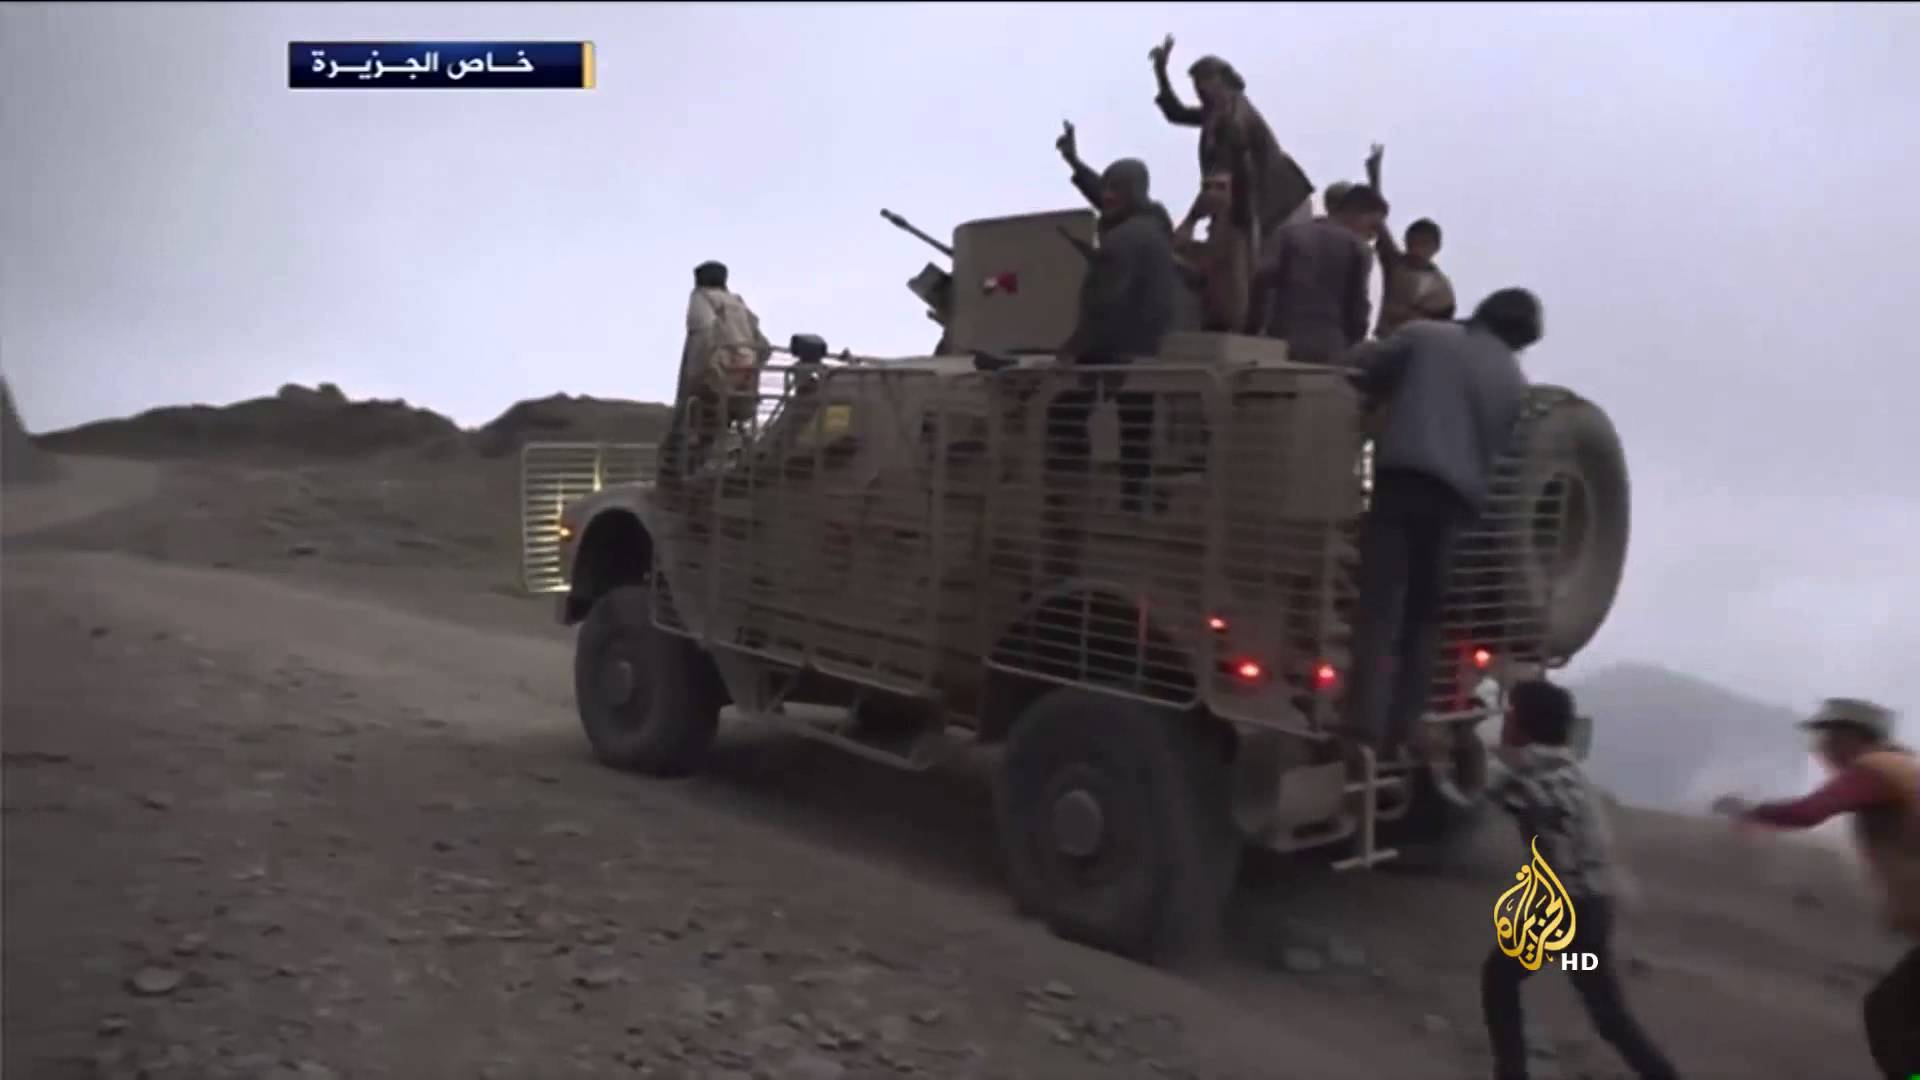 وصول تعزيزات عسكرية جديدة لقوات التحالف إلى الجبهة الغربية بمدينة تعز